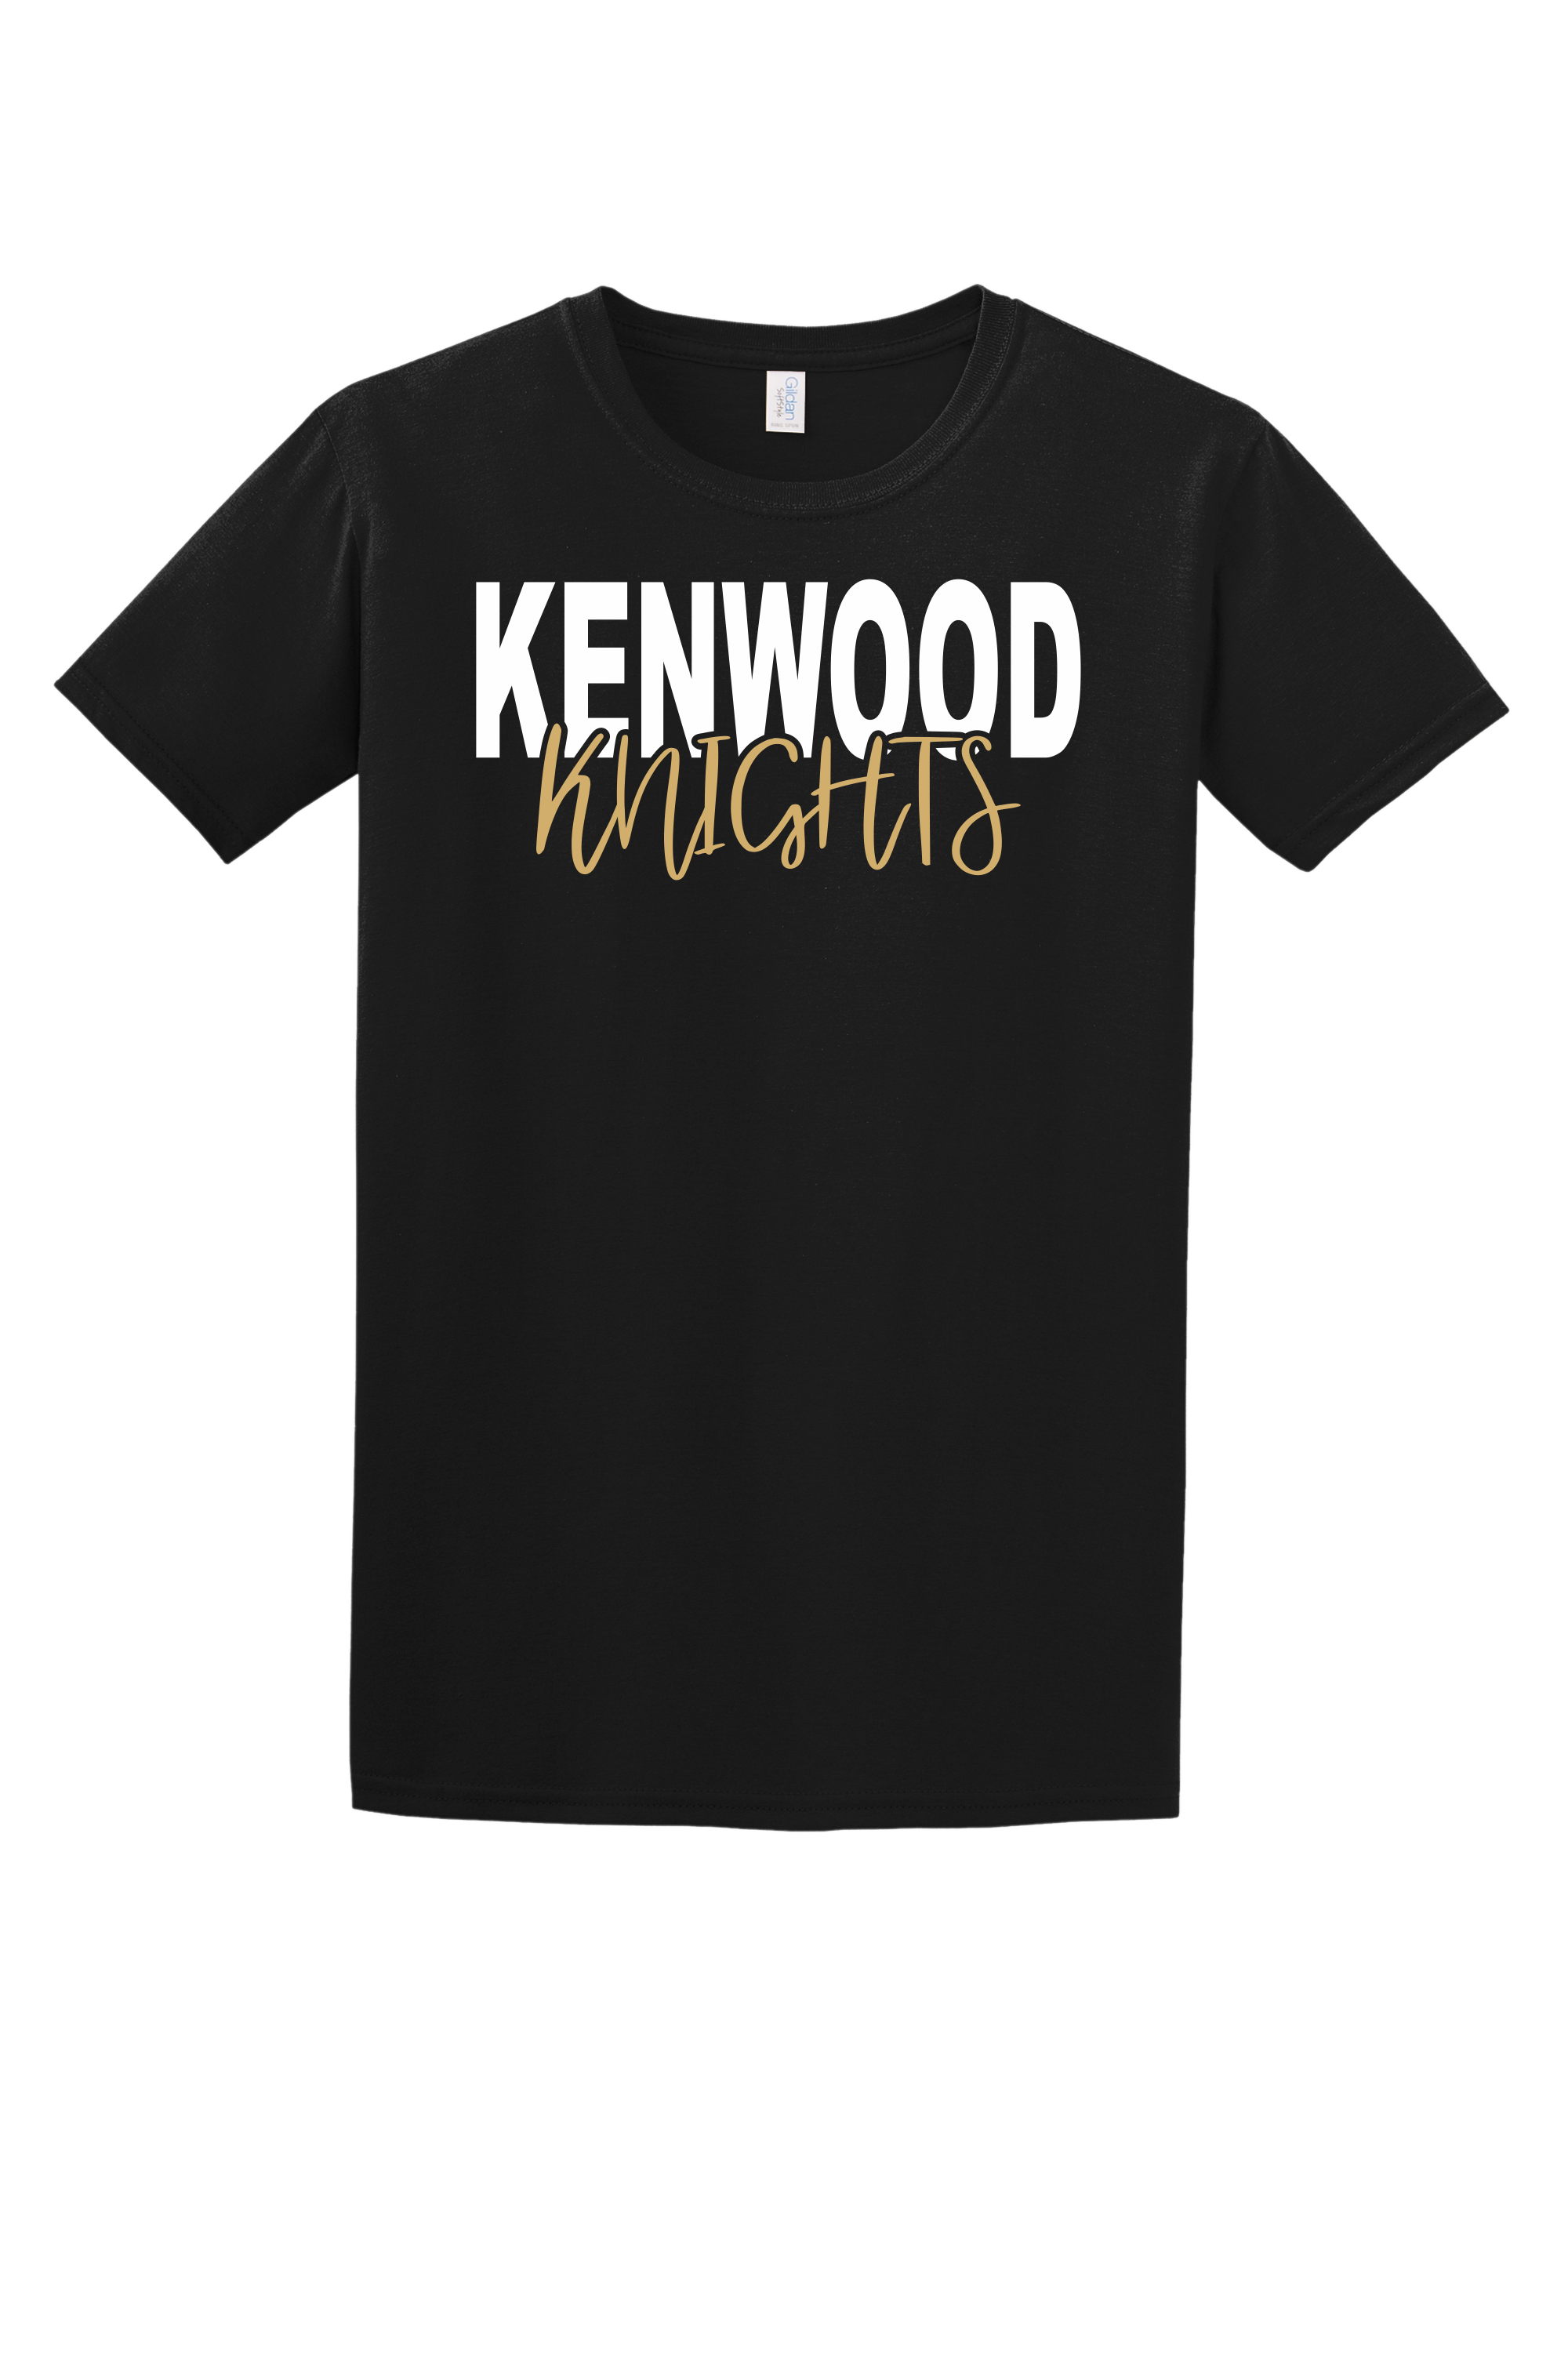 Kenwood Knights Tee